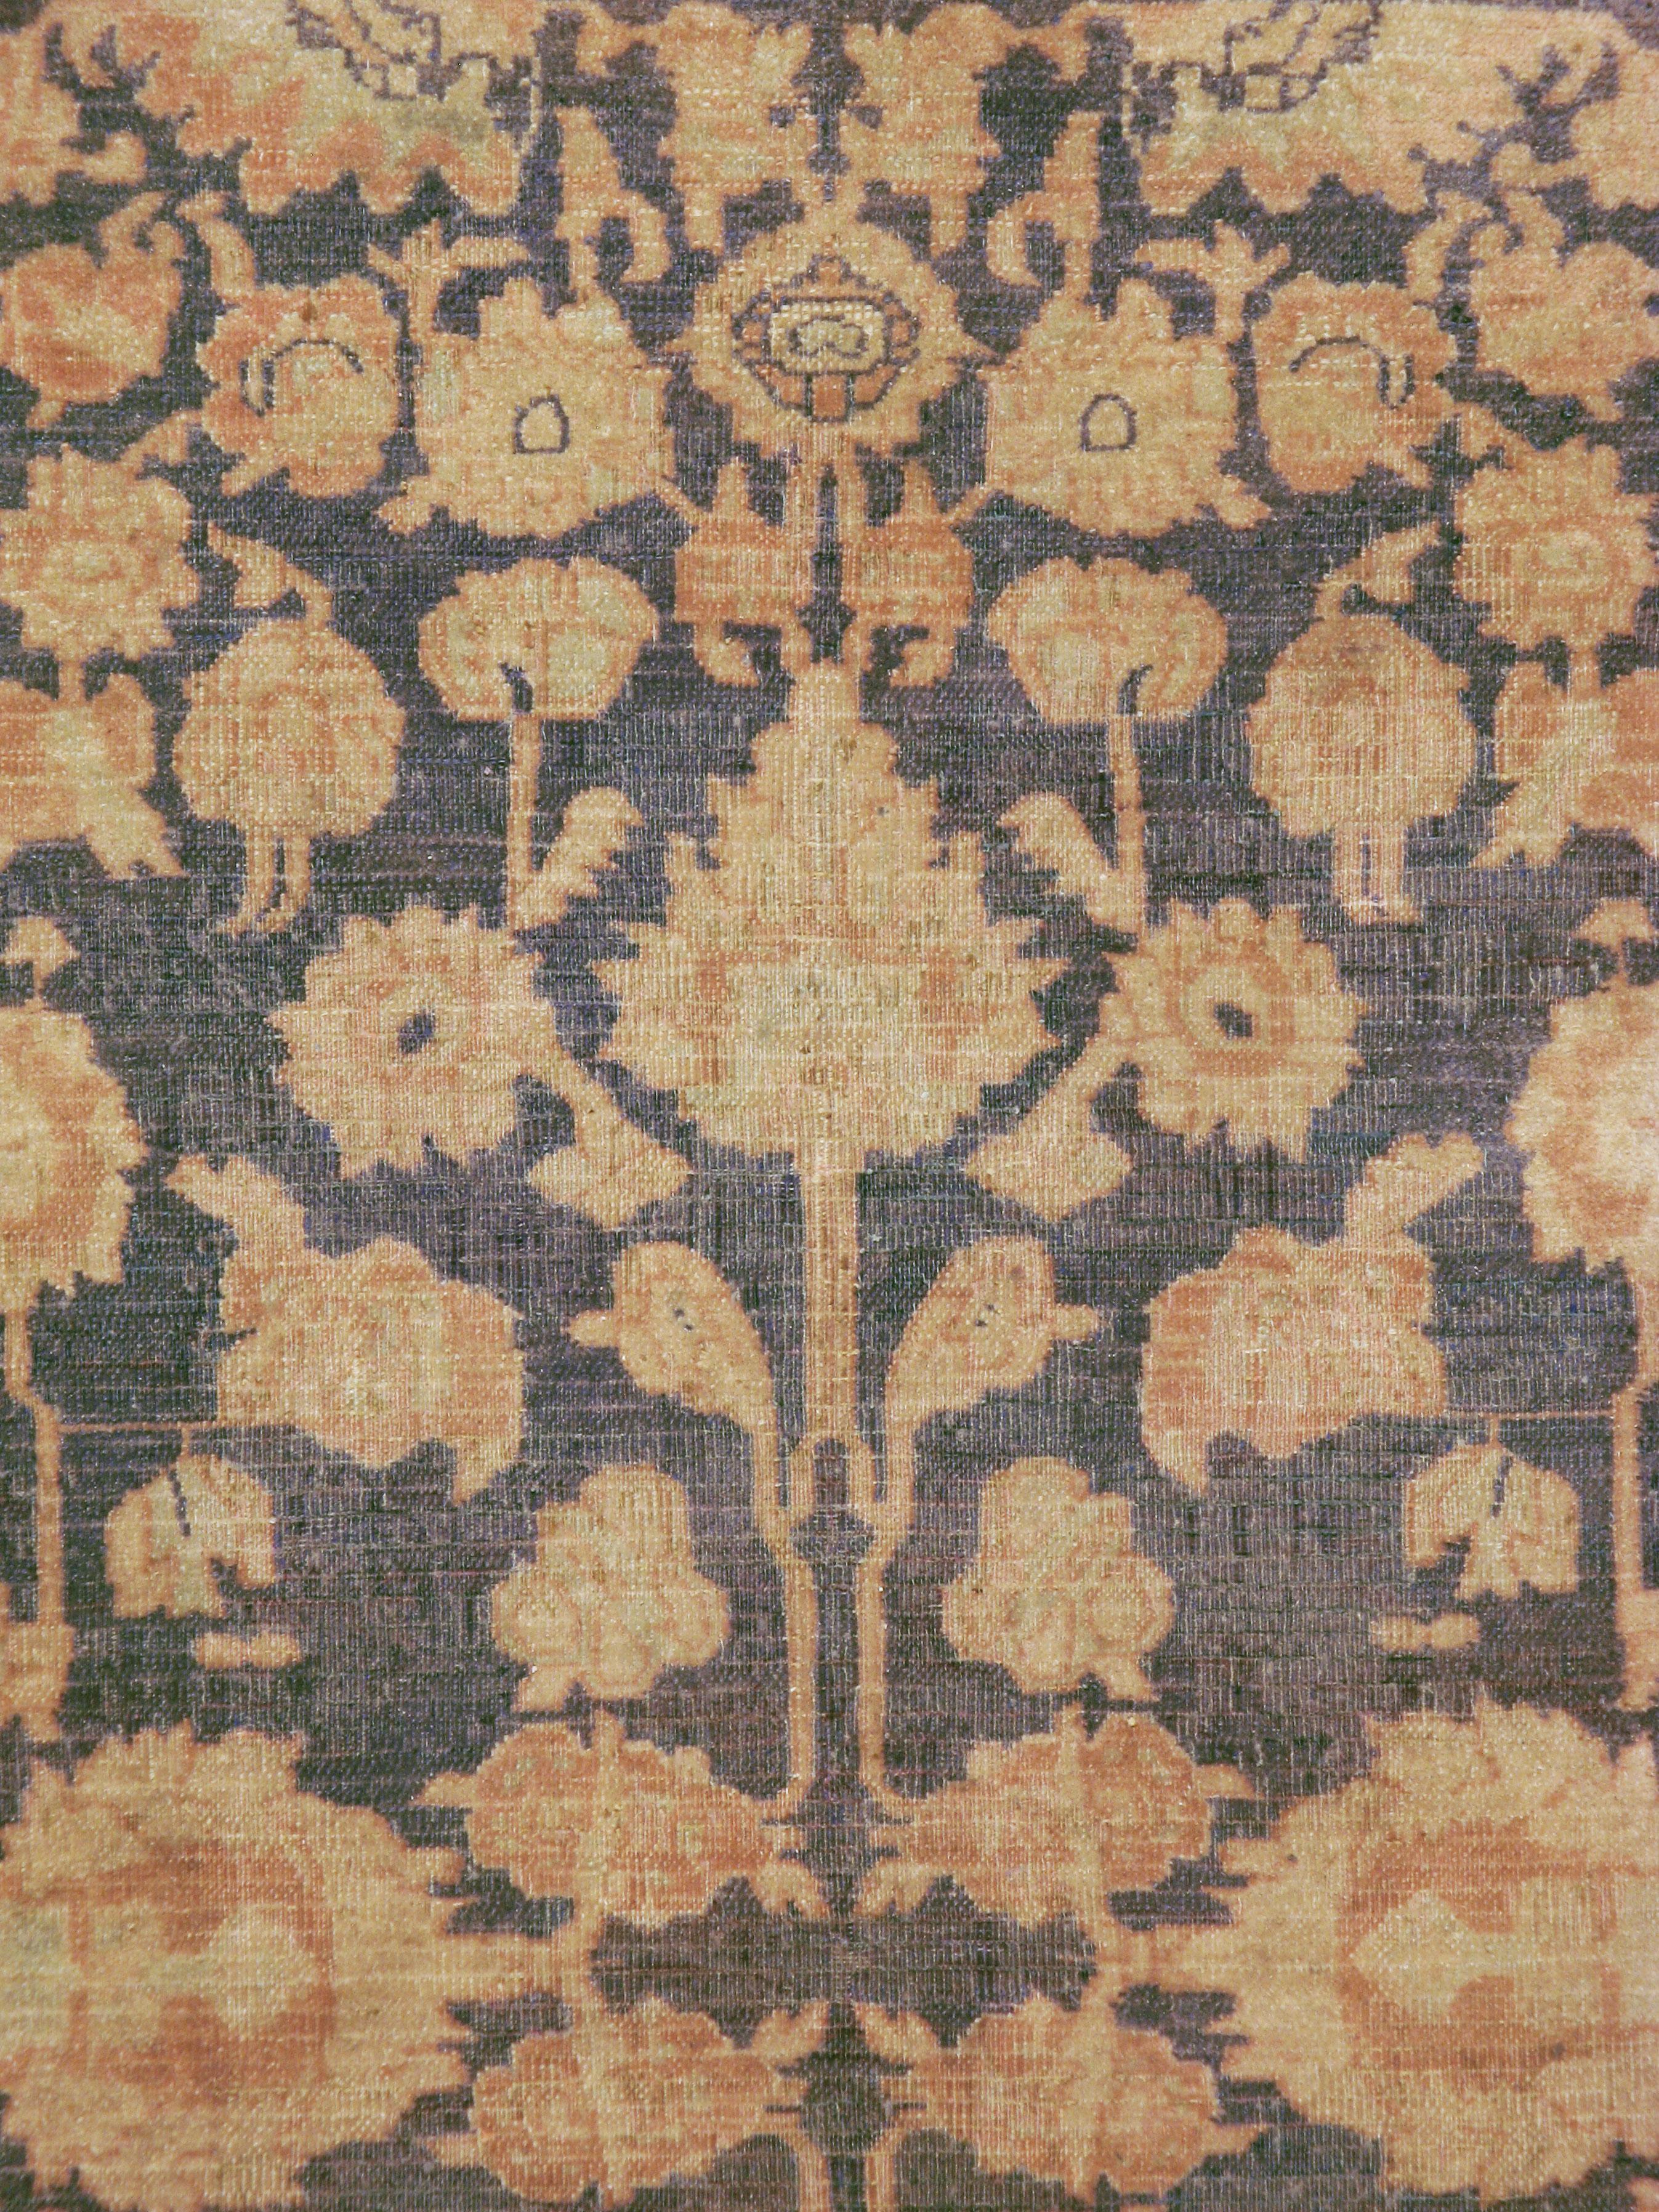 Ein alter indischer Agra-Teppich aus der Mitte des 20. Jahrhunderts.

Maße: 5' 9